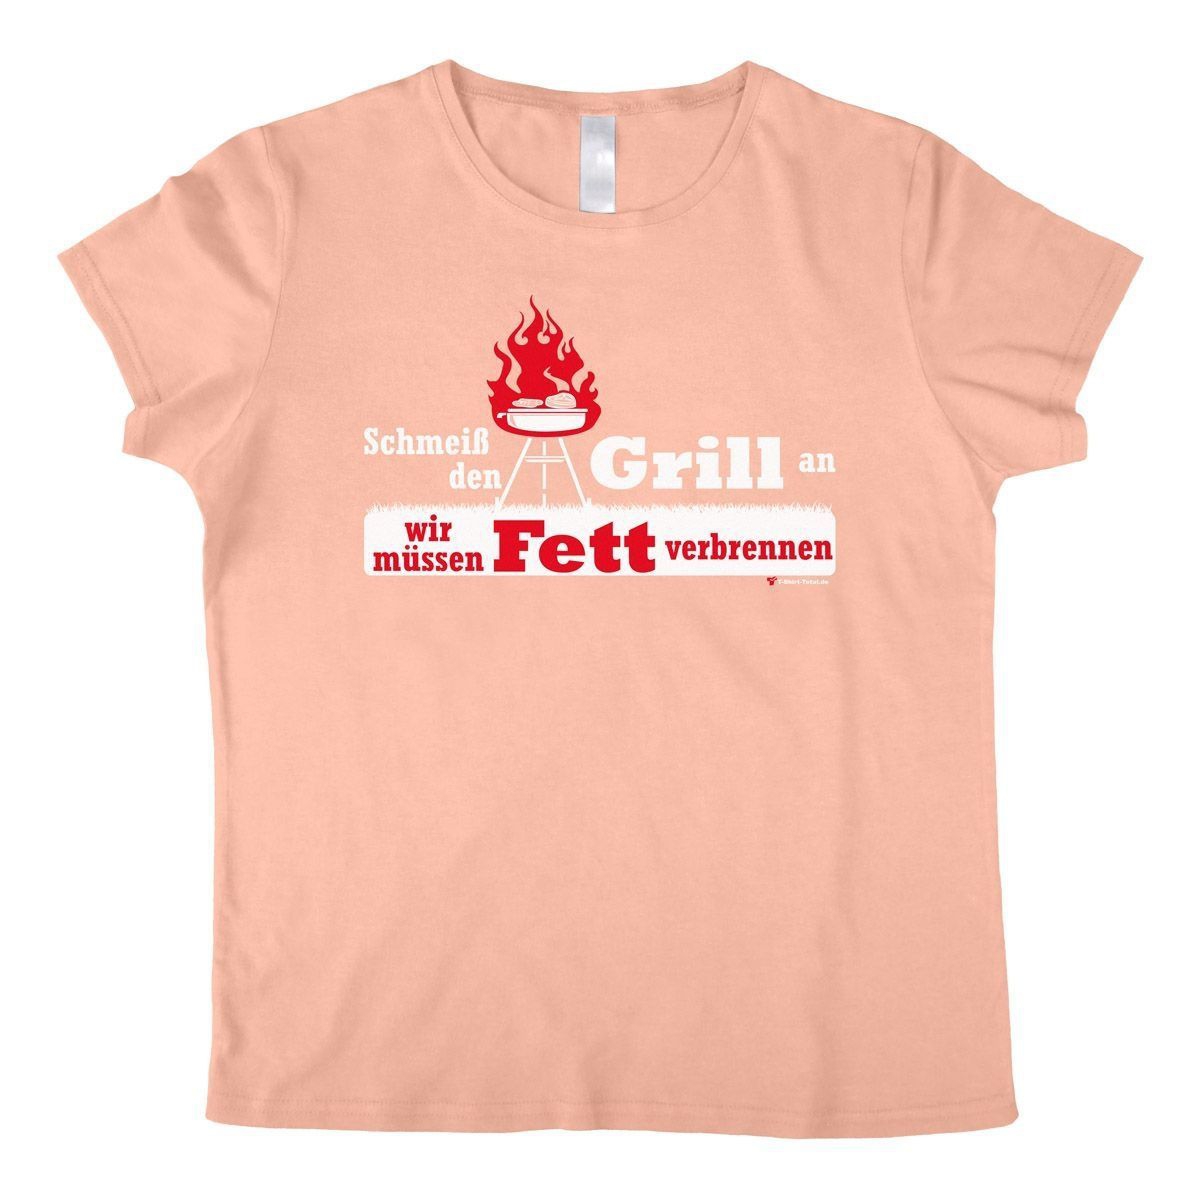 Fett verbrennen Woman T-Shirt rosa Small